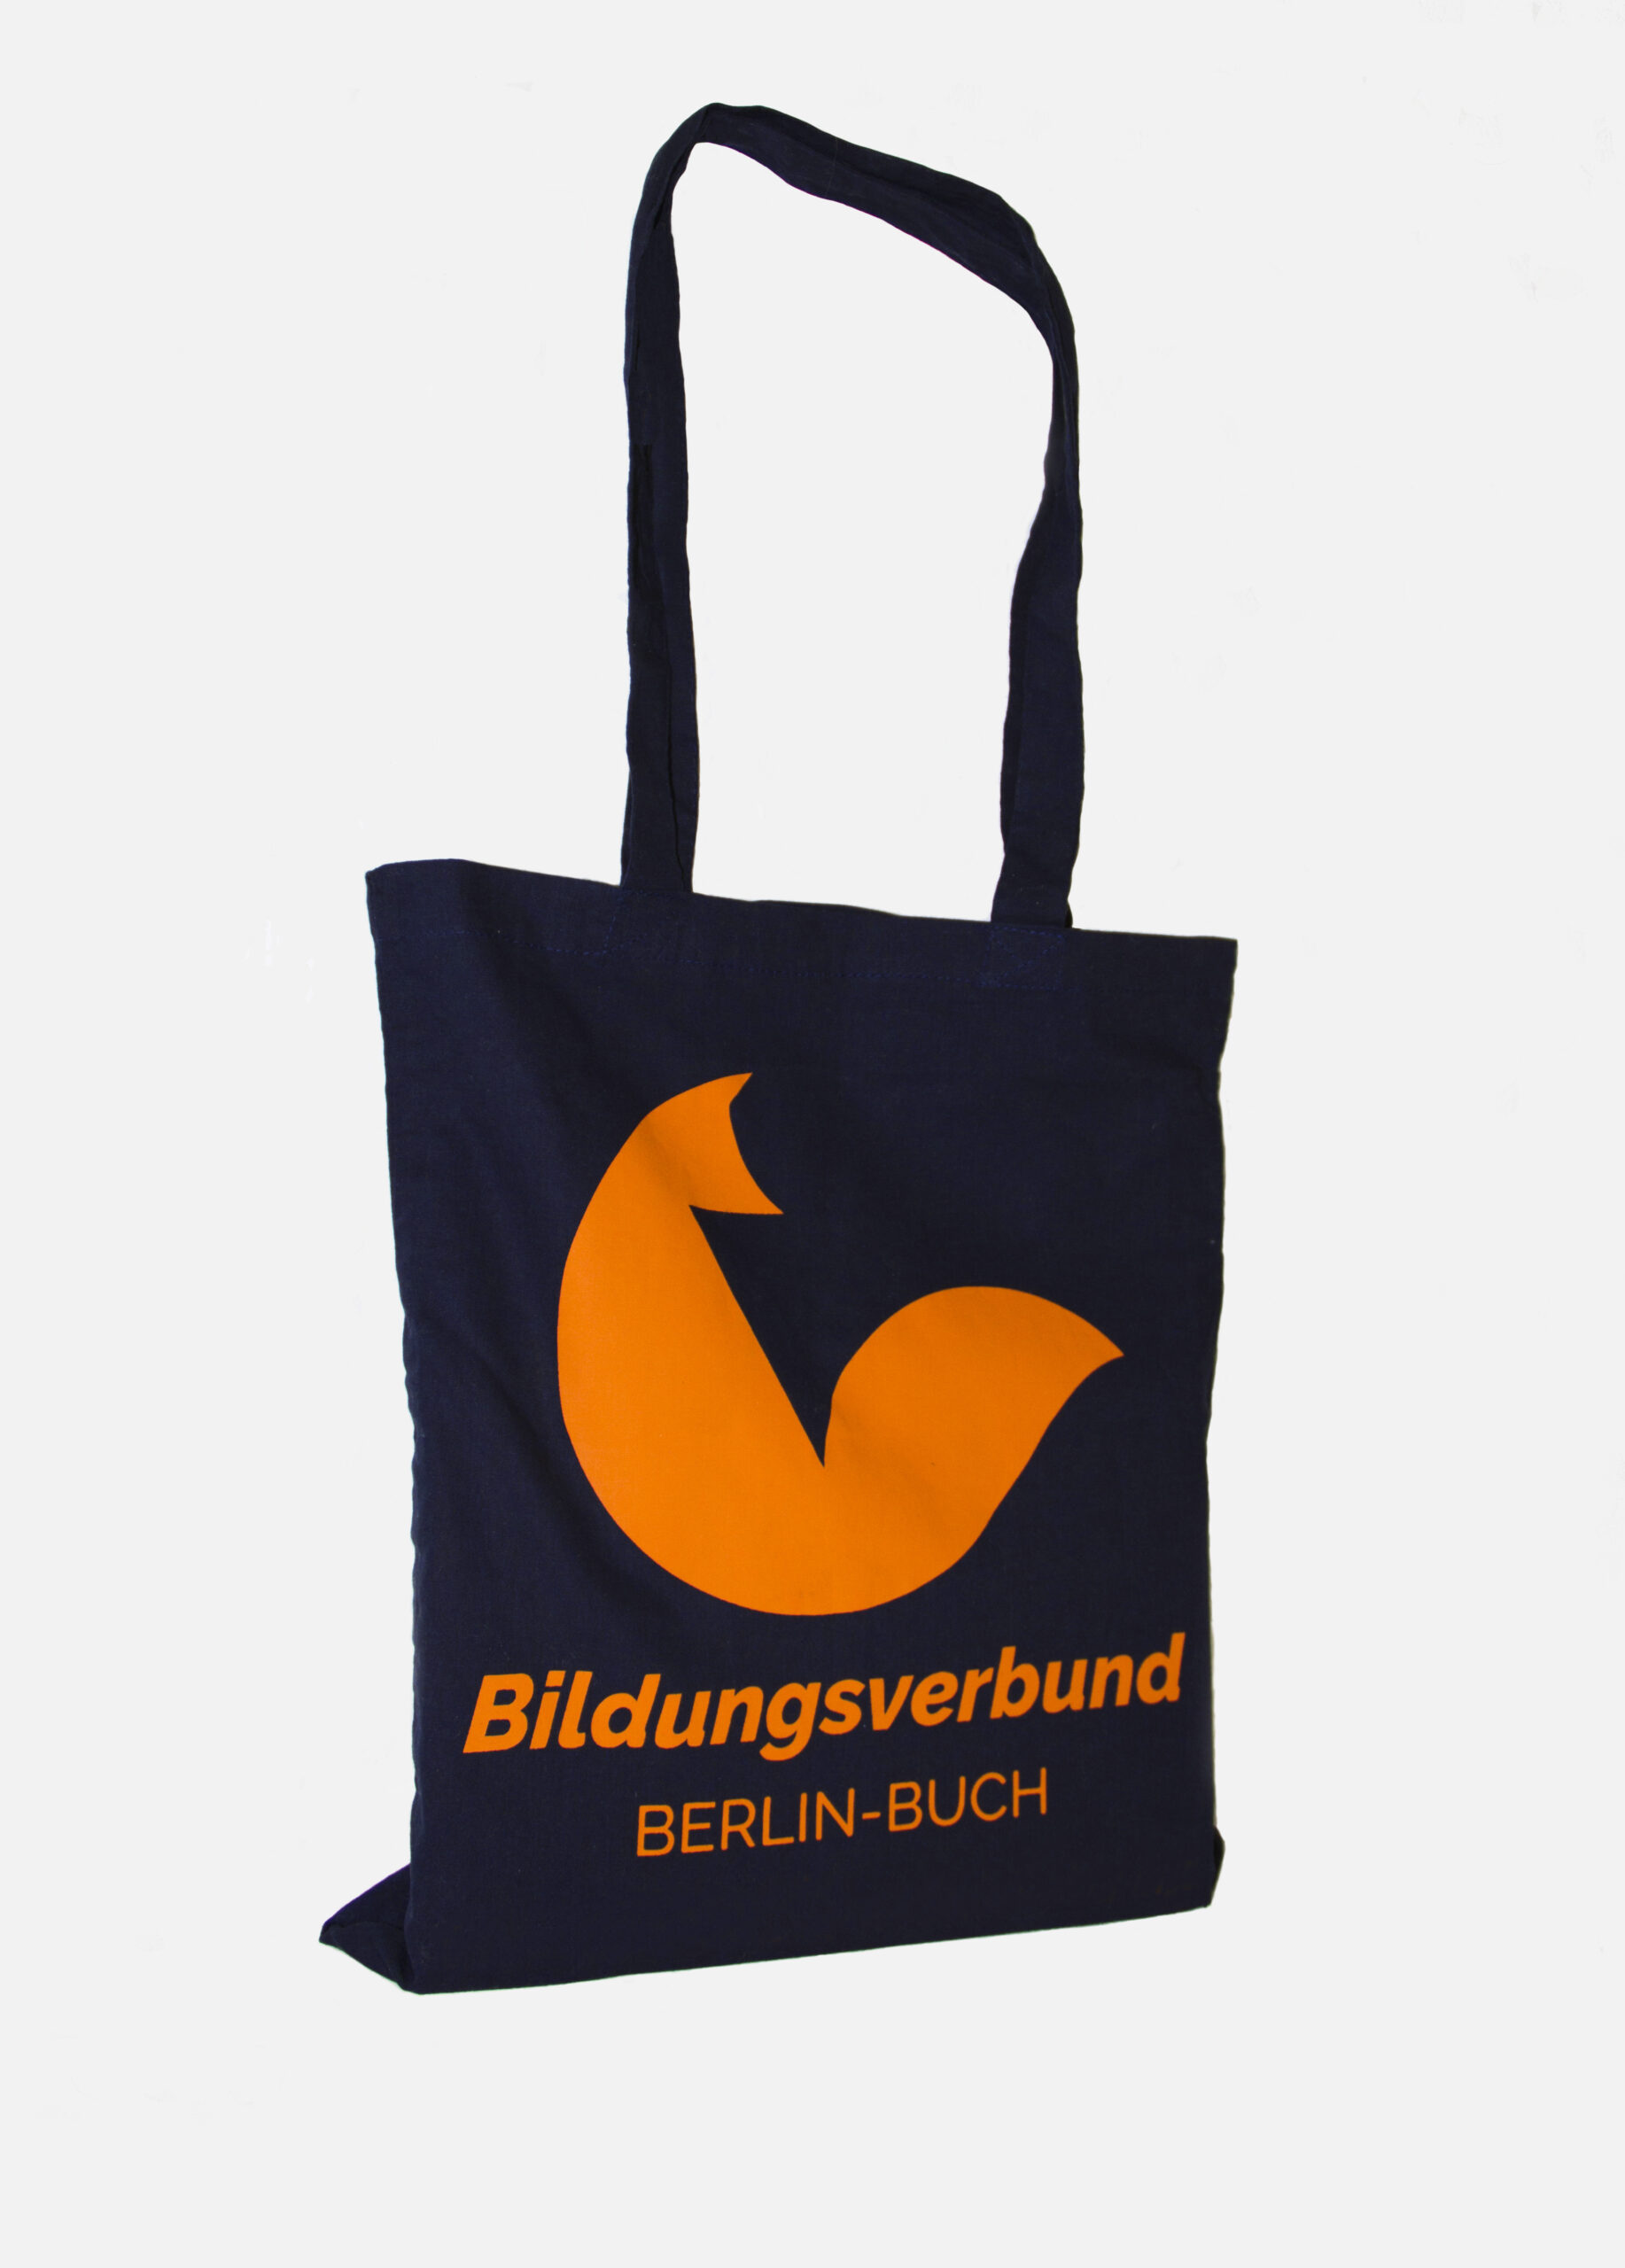 Bildungsverbund — Berlin-Buch